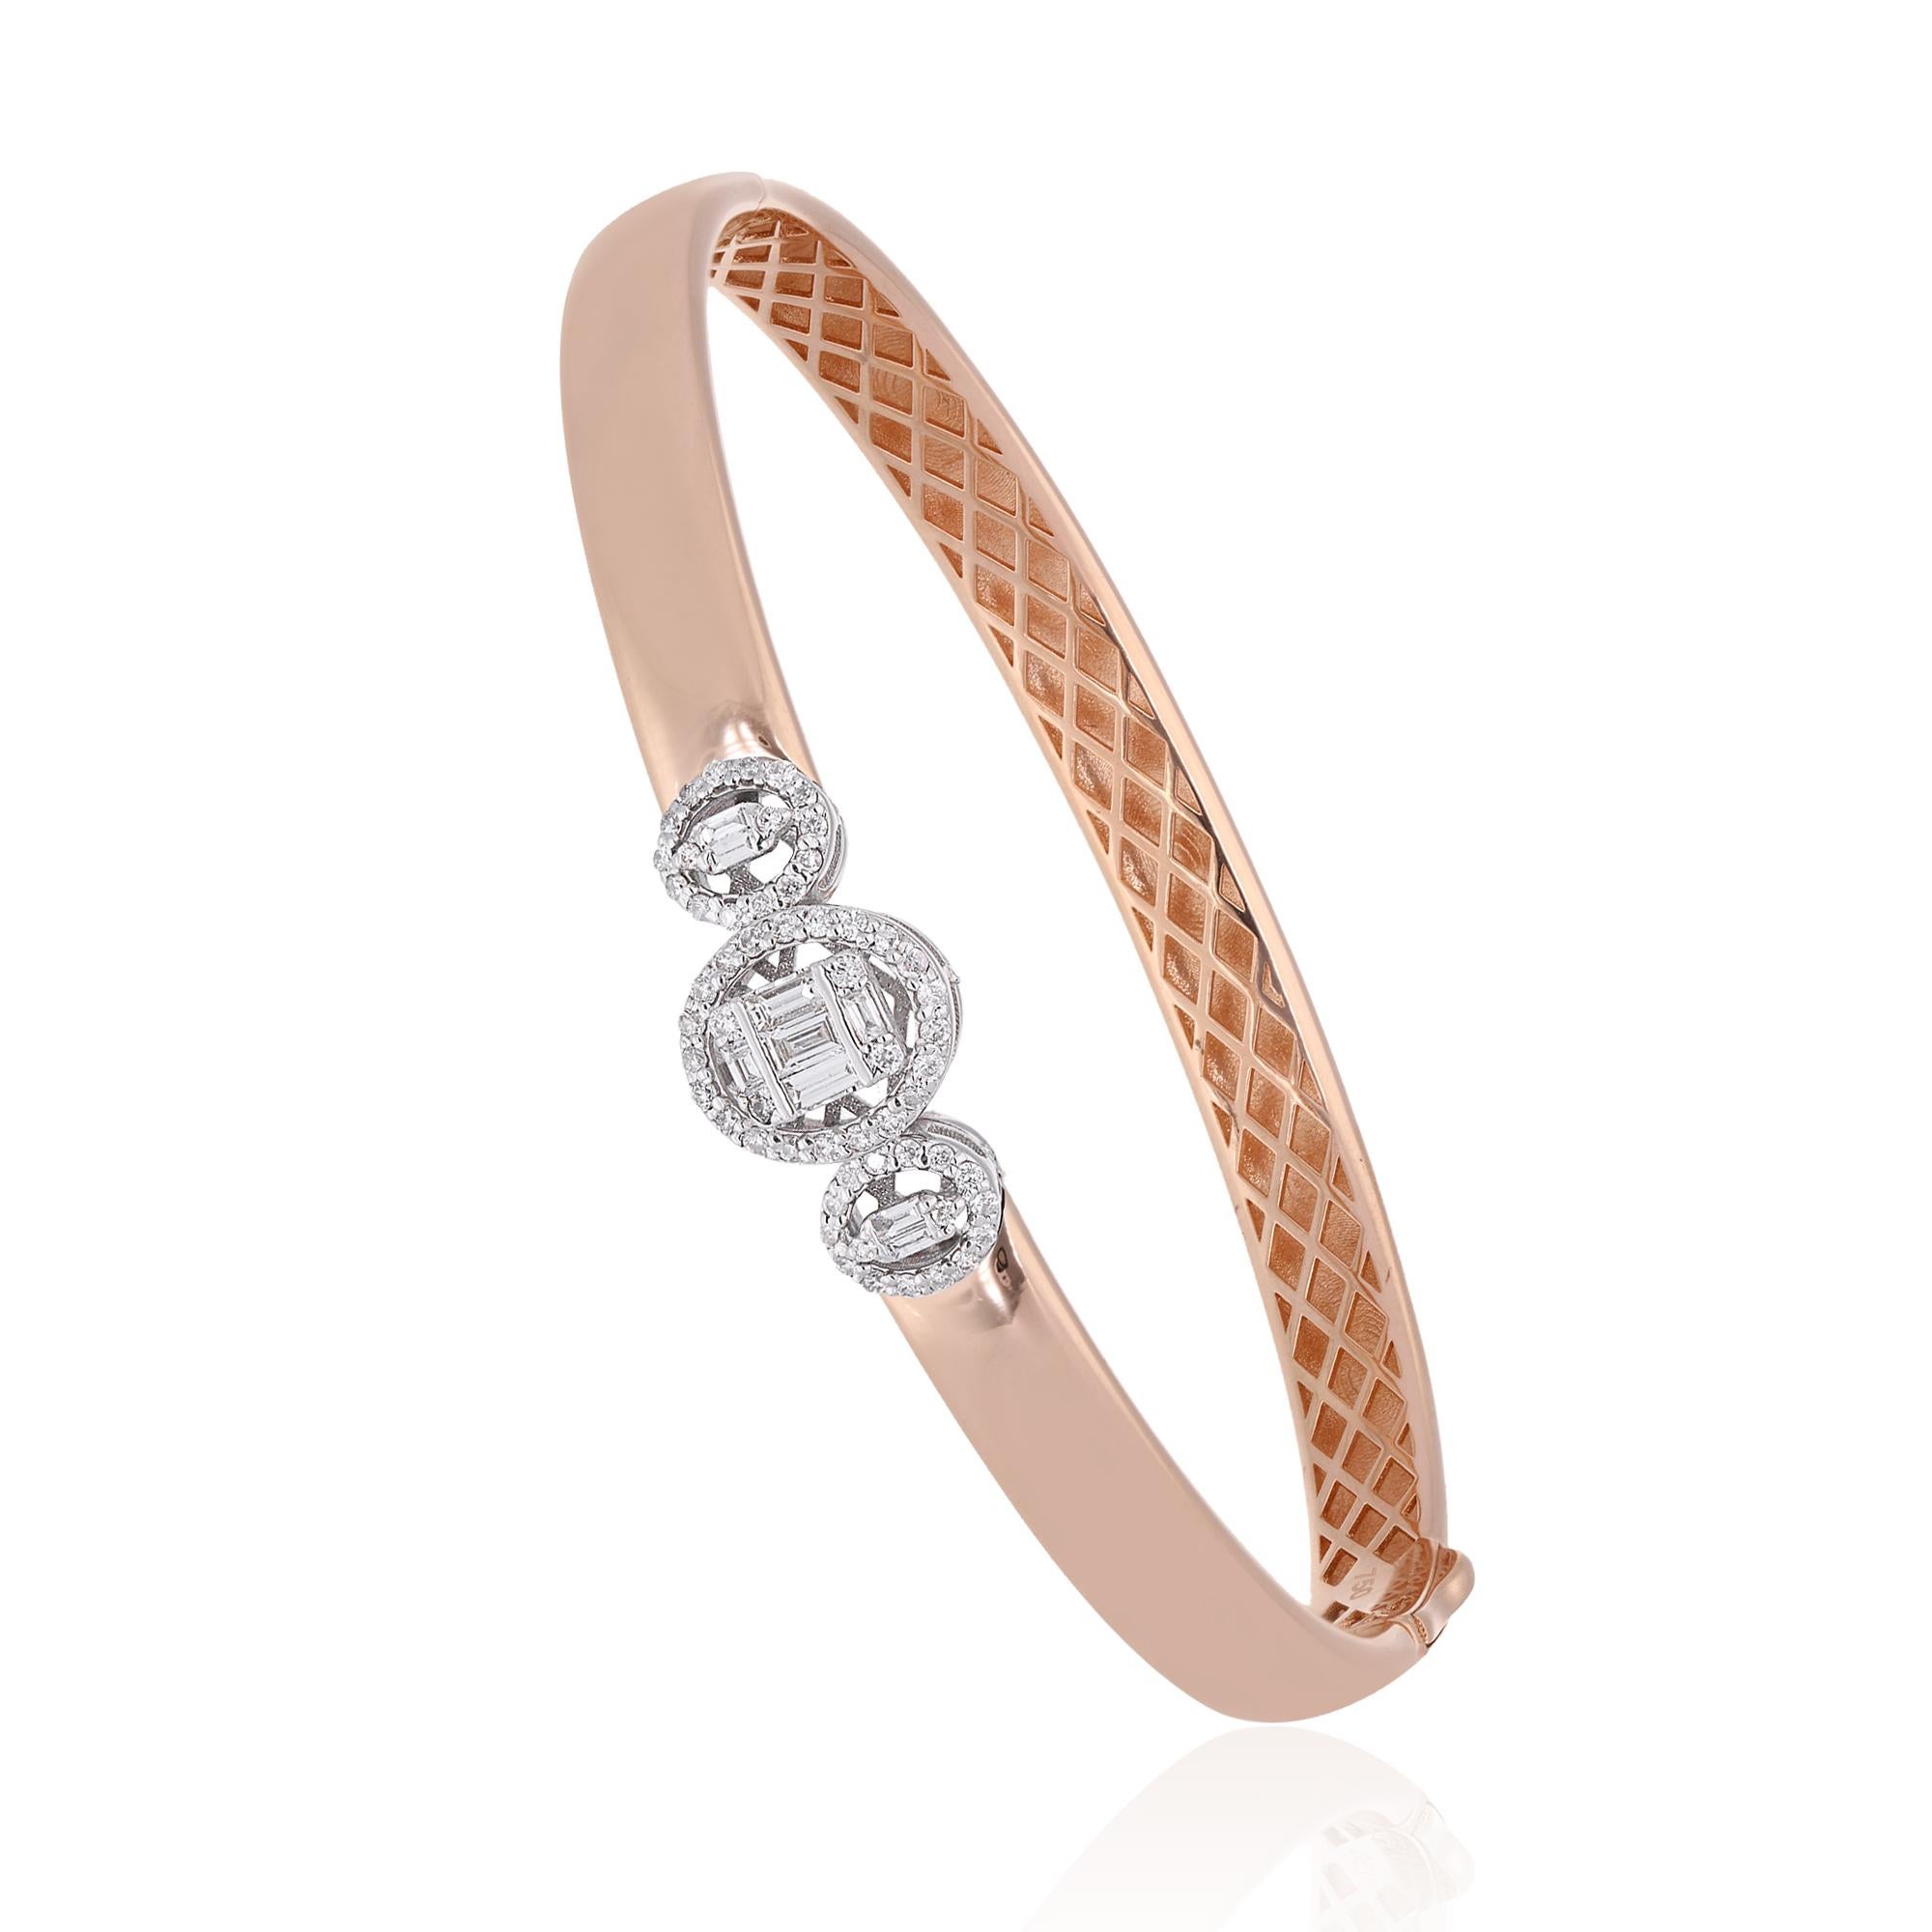 Simple et élégant, ce bracelet en or rose 18 carats serti de diamants vous donnera un air de mode et de classe. Sa brillance élégante et sa finition impeccable rehaussent son charme majestueux et le rendent plus adorable.

✧✧Welcome To Our Shop